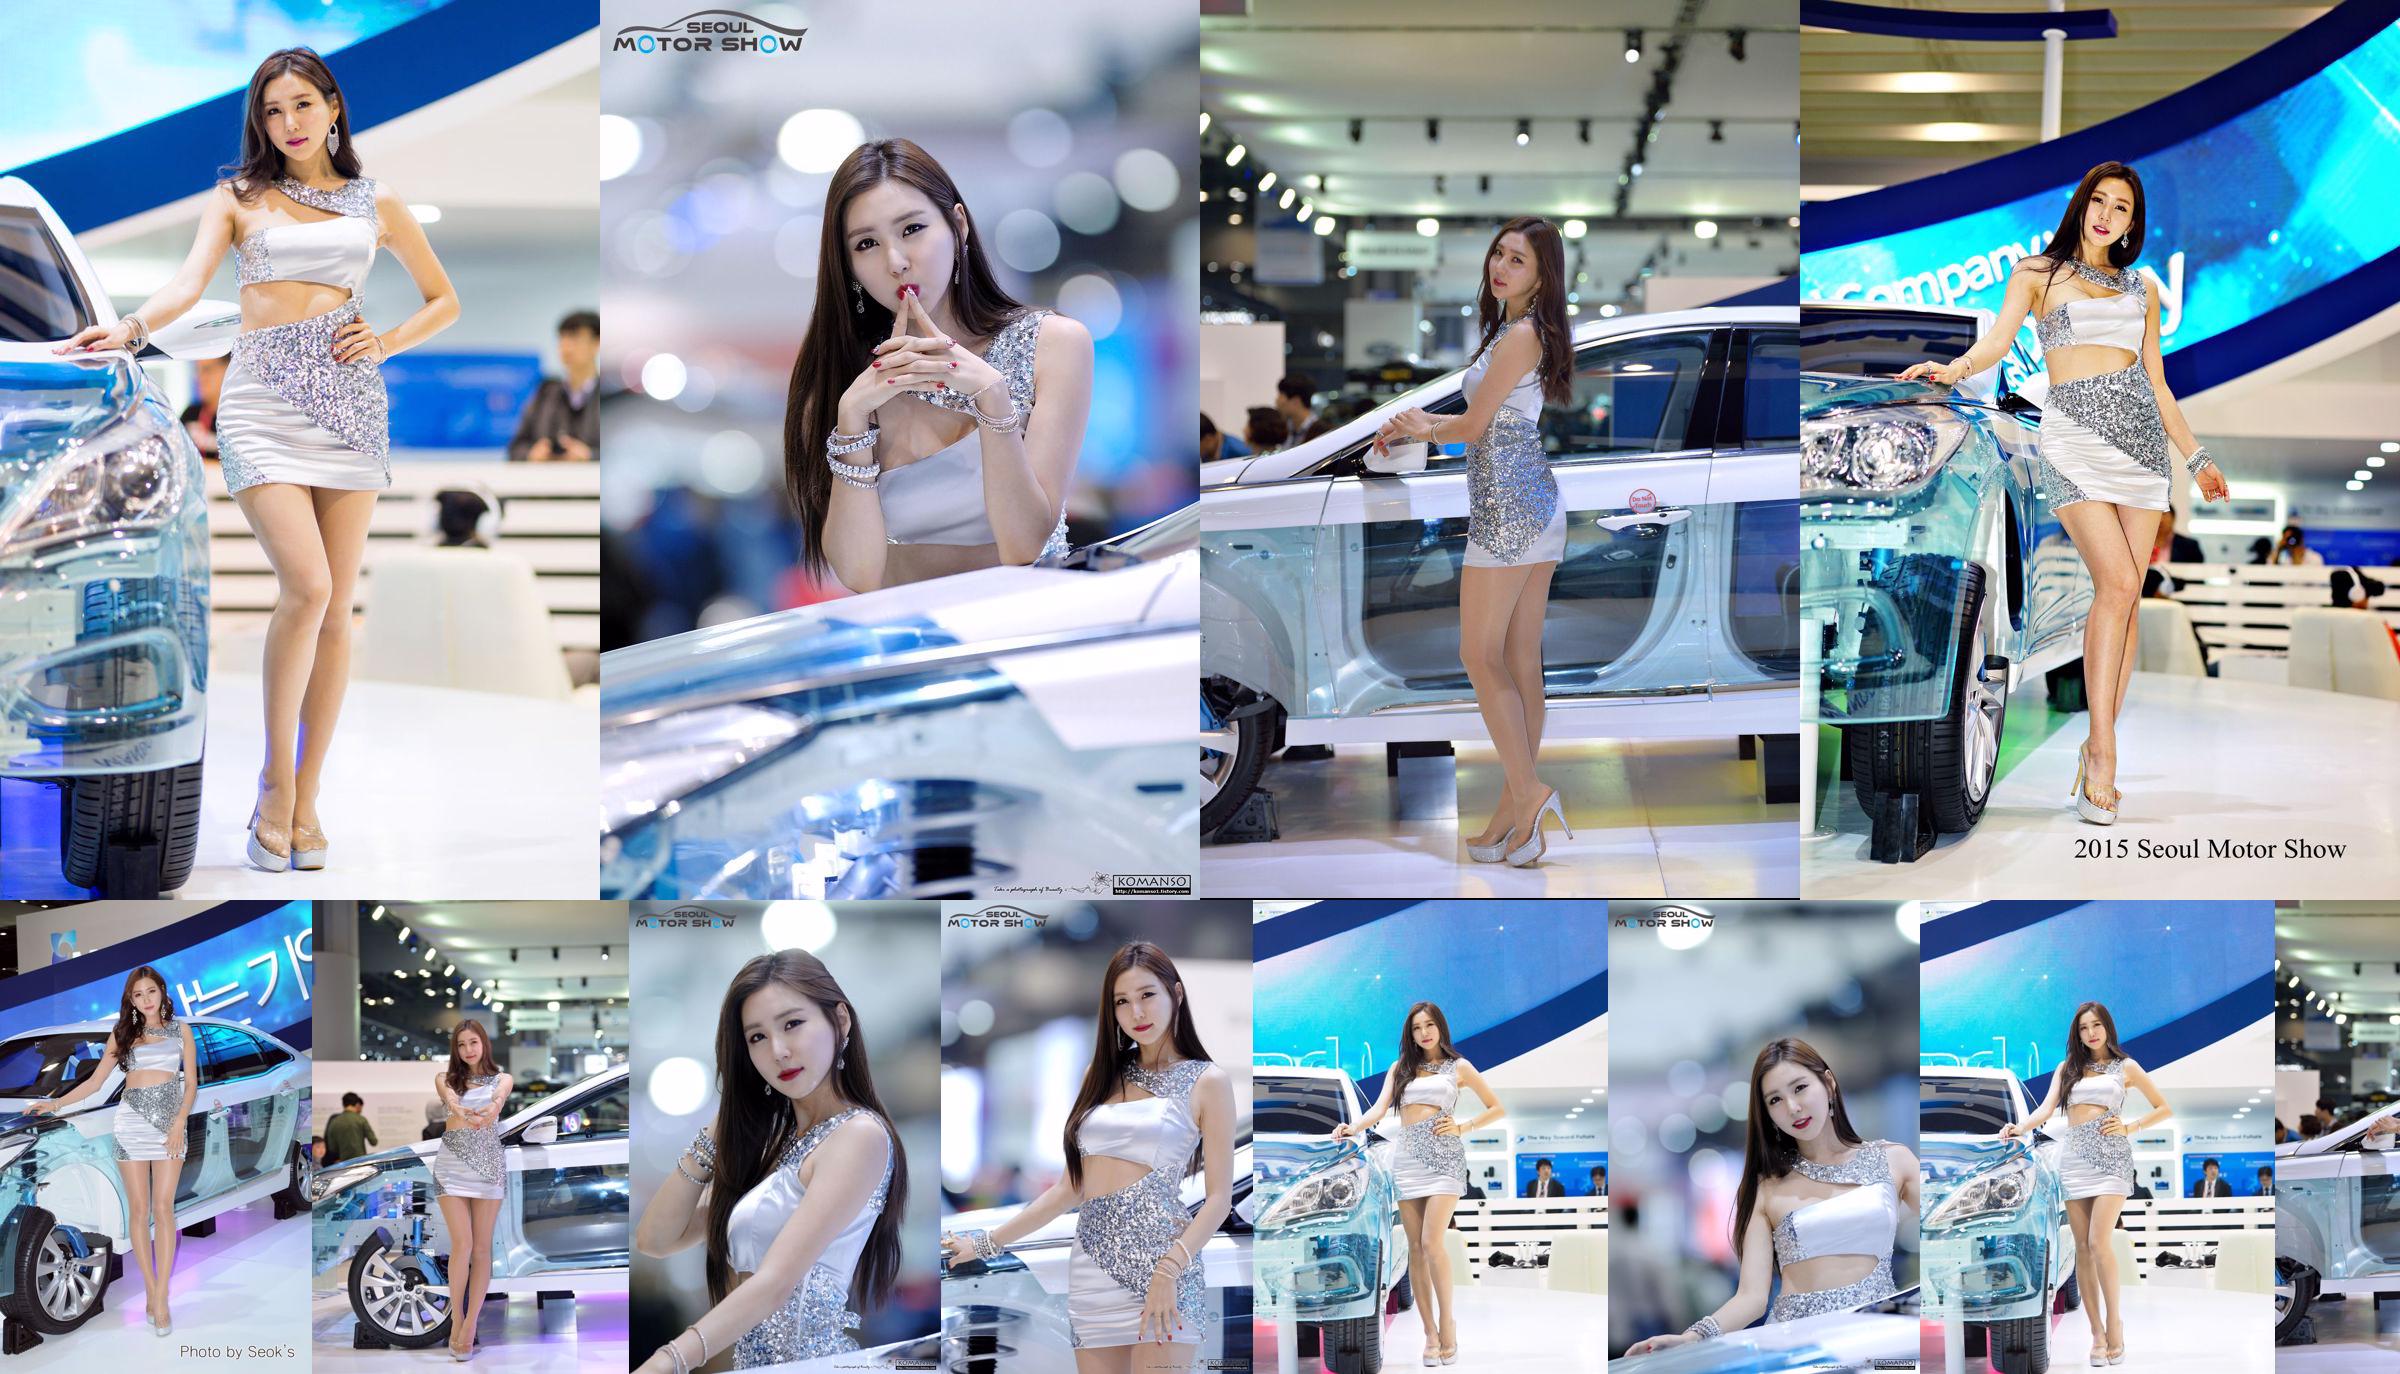 Modelo de coche coreano Choi Yujin-Auto Show Colección de imágenes No.979cb9 Página 8